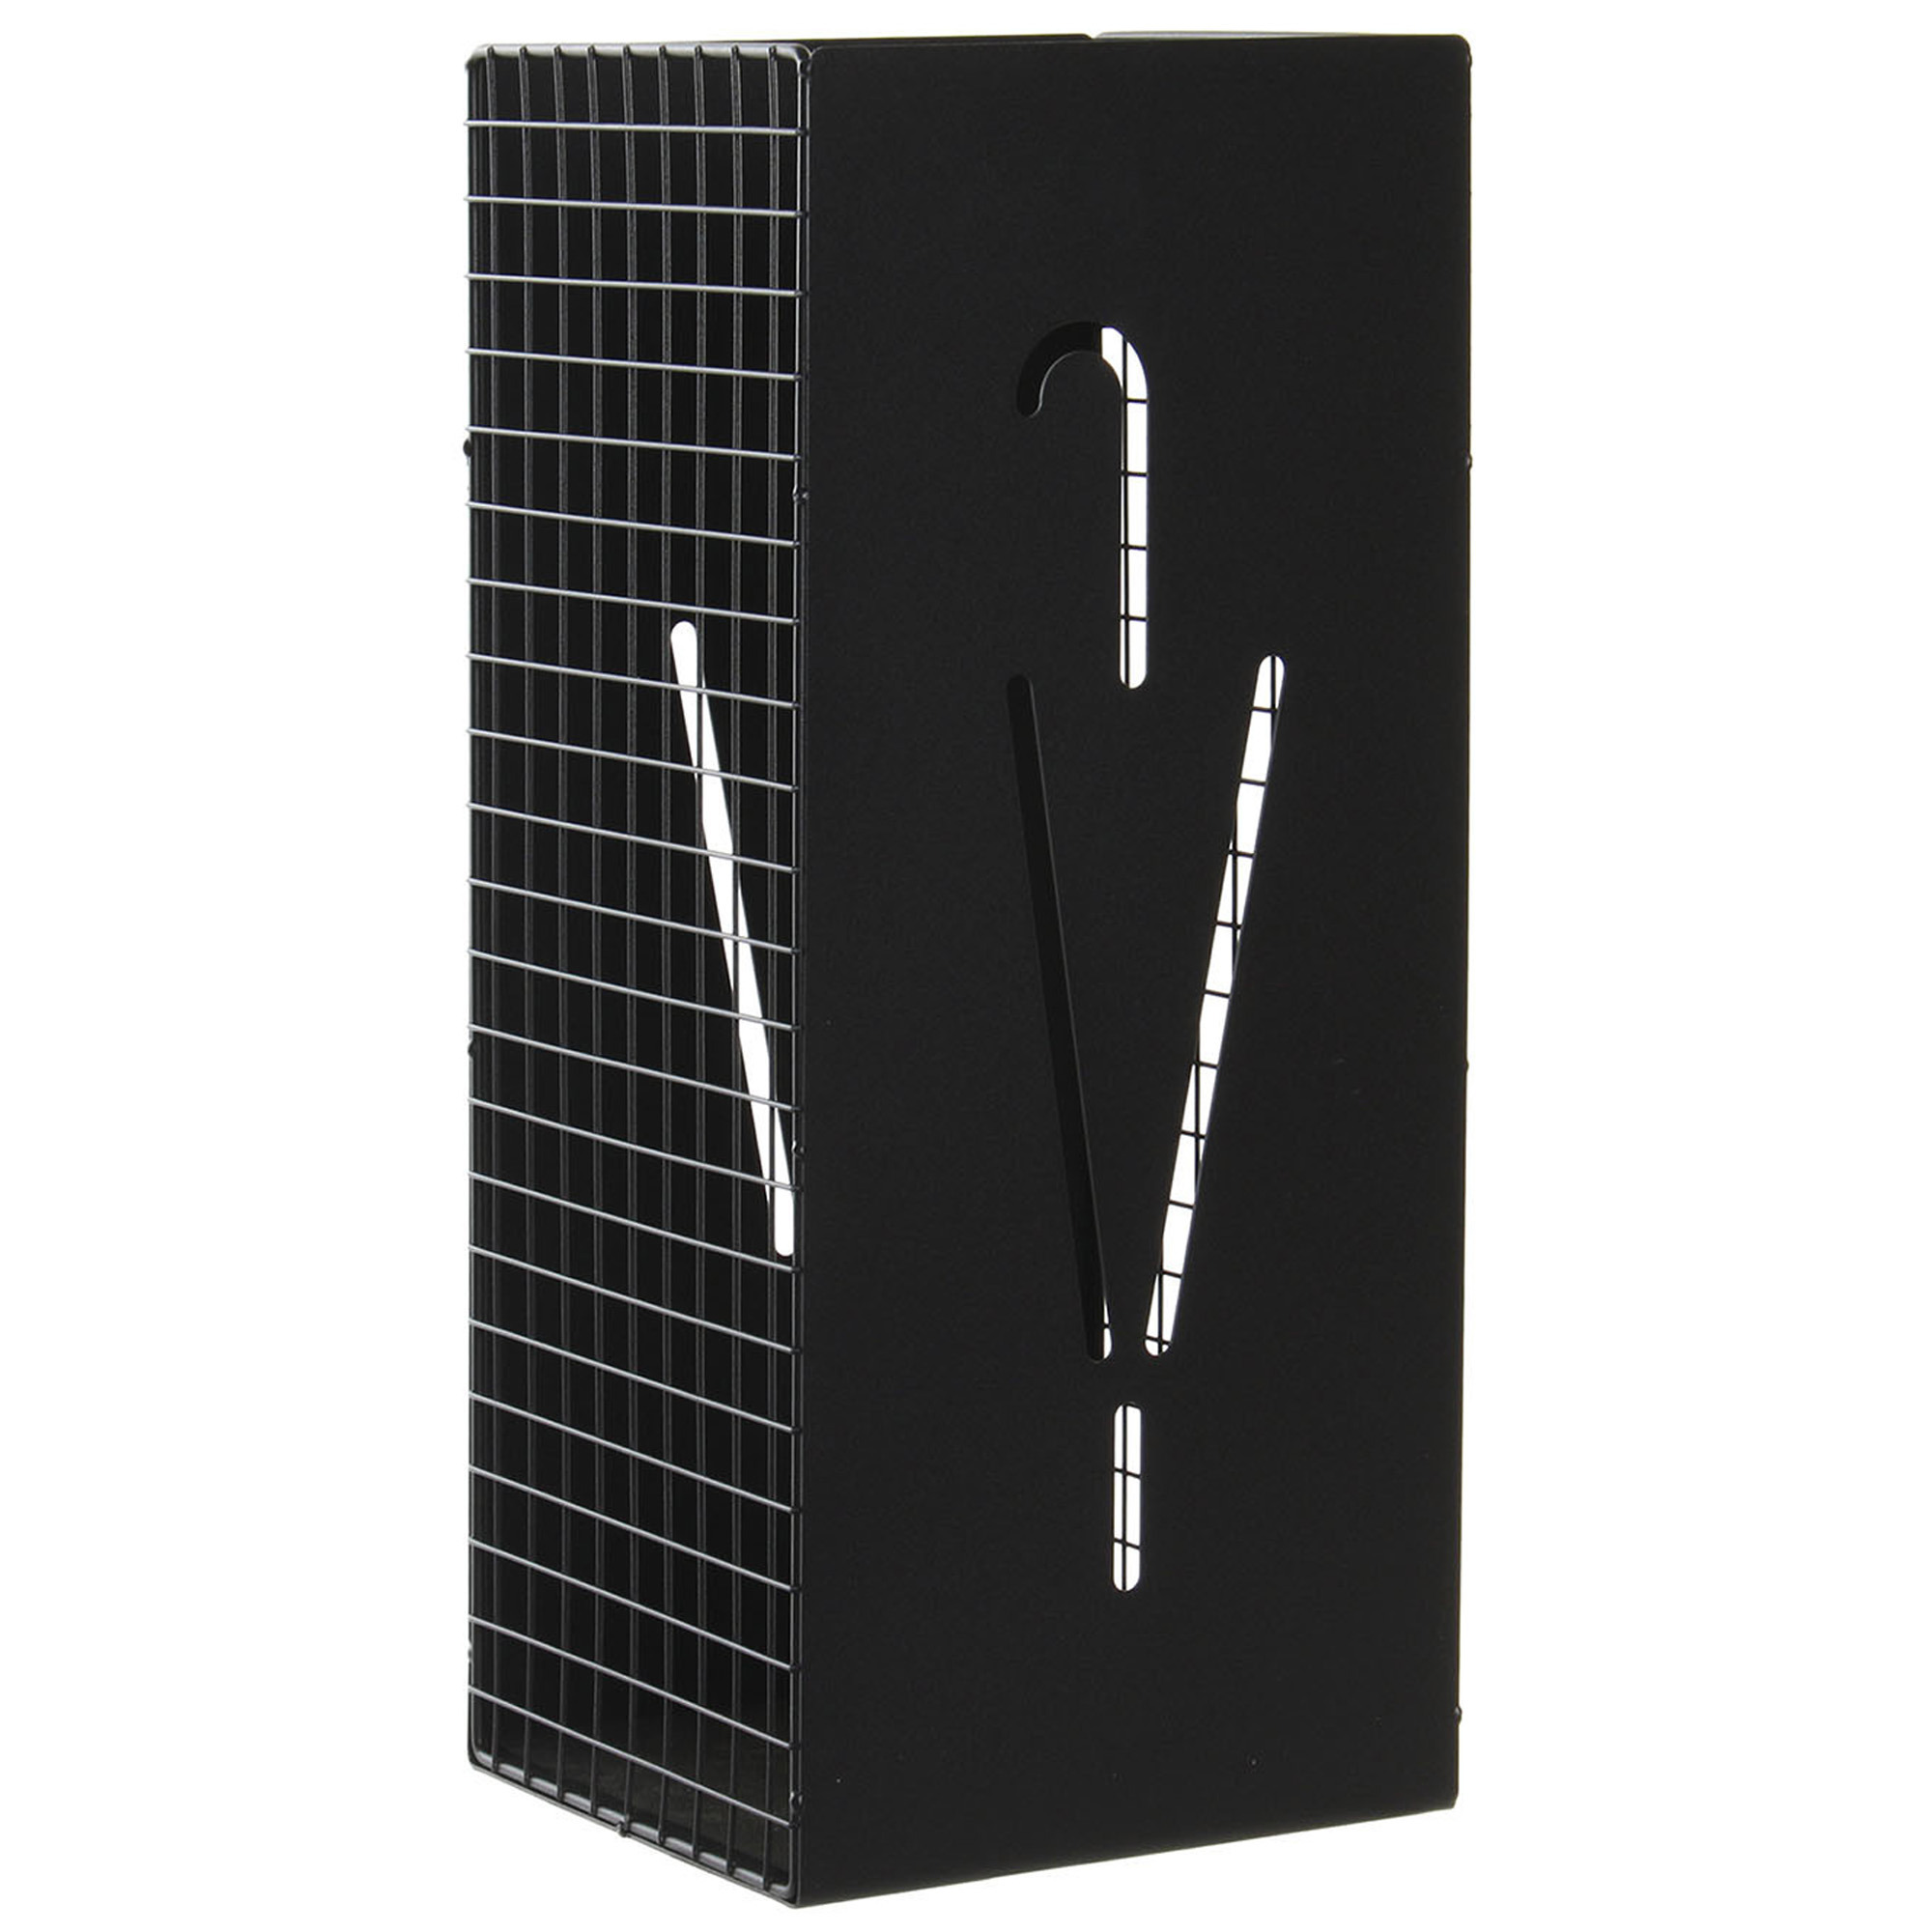 Items paraplubak-parapluhouder zwart metaal met decoraties D20 x H47 cm